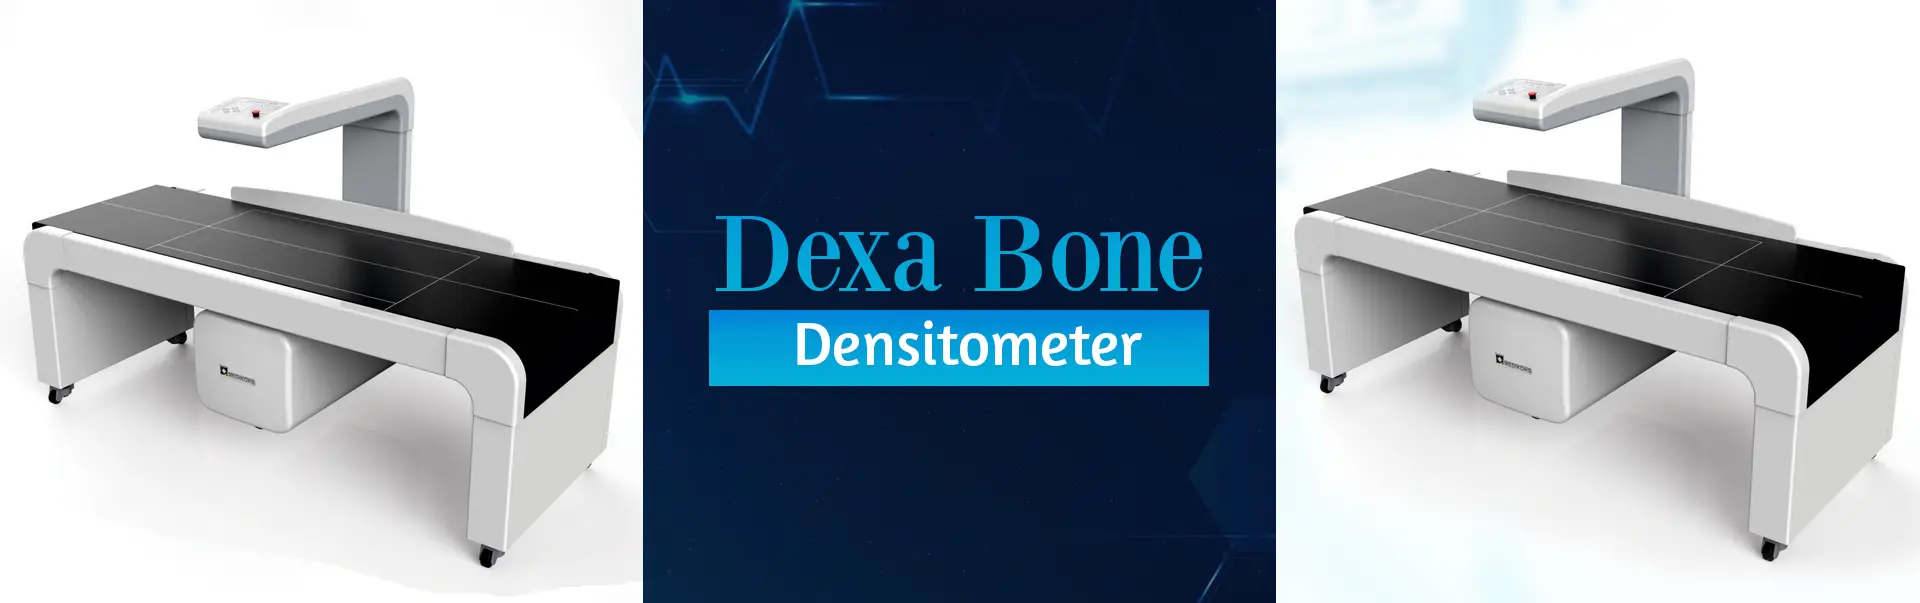 Dexa Bone Densitometer Manufacturers in Saharanpur